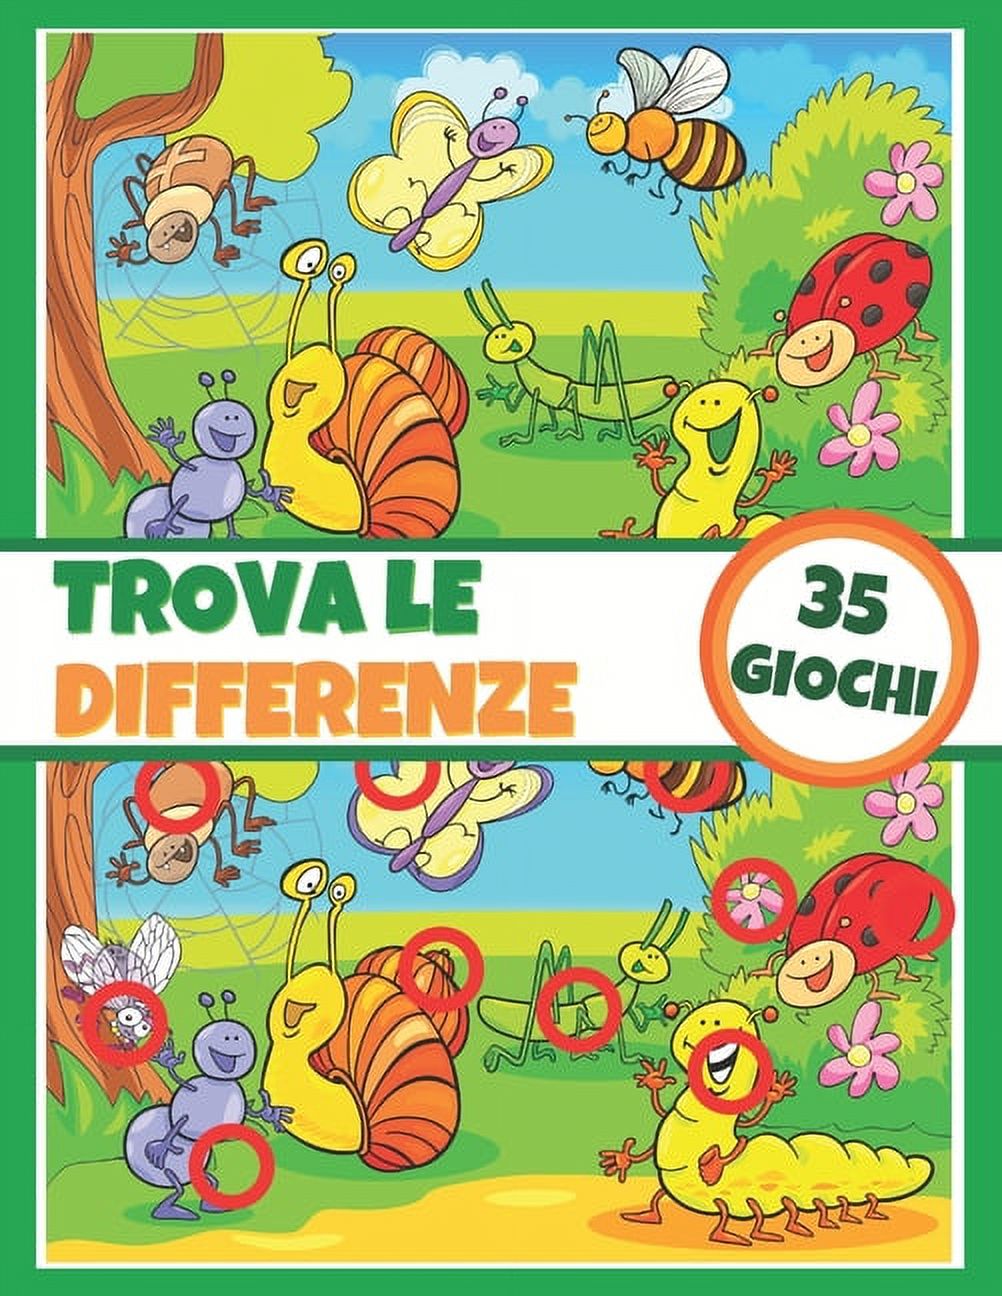 Trova le differenze - 35 giochi: Libro di attività per bambini - Libro di giochi - A partire da 5 anni - Completamente colorabile (Paperback) - image 1 of 1